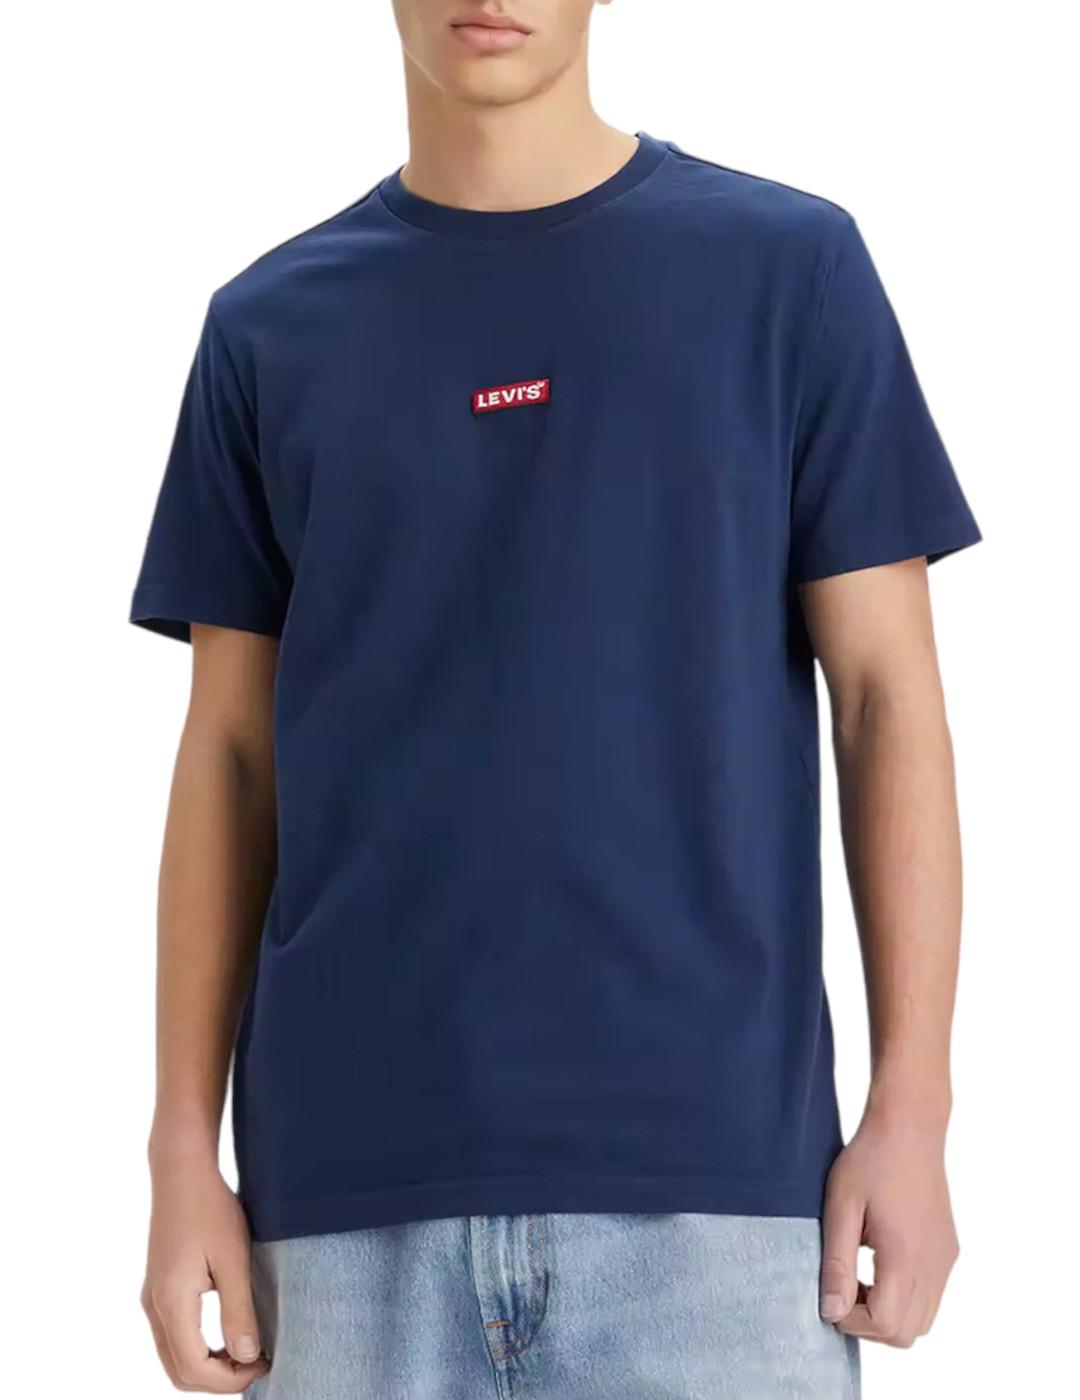 Levi's - Camiseta Levis Relaxed Hombre Azul Marino Cómoda Todo el Día